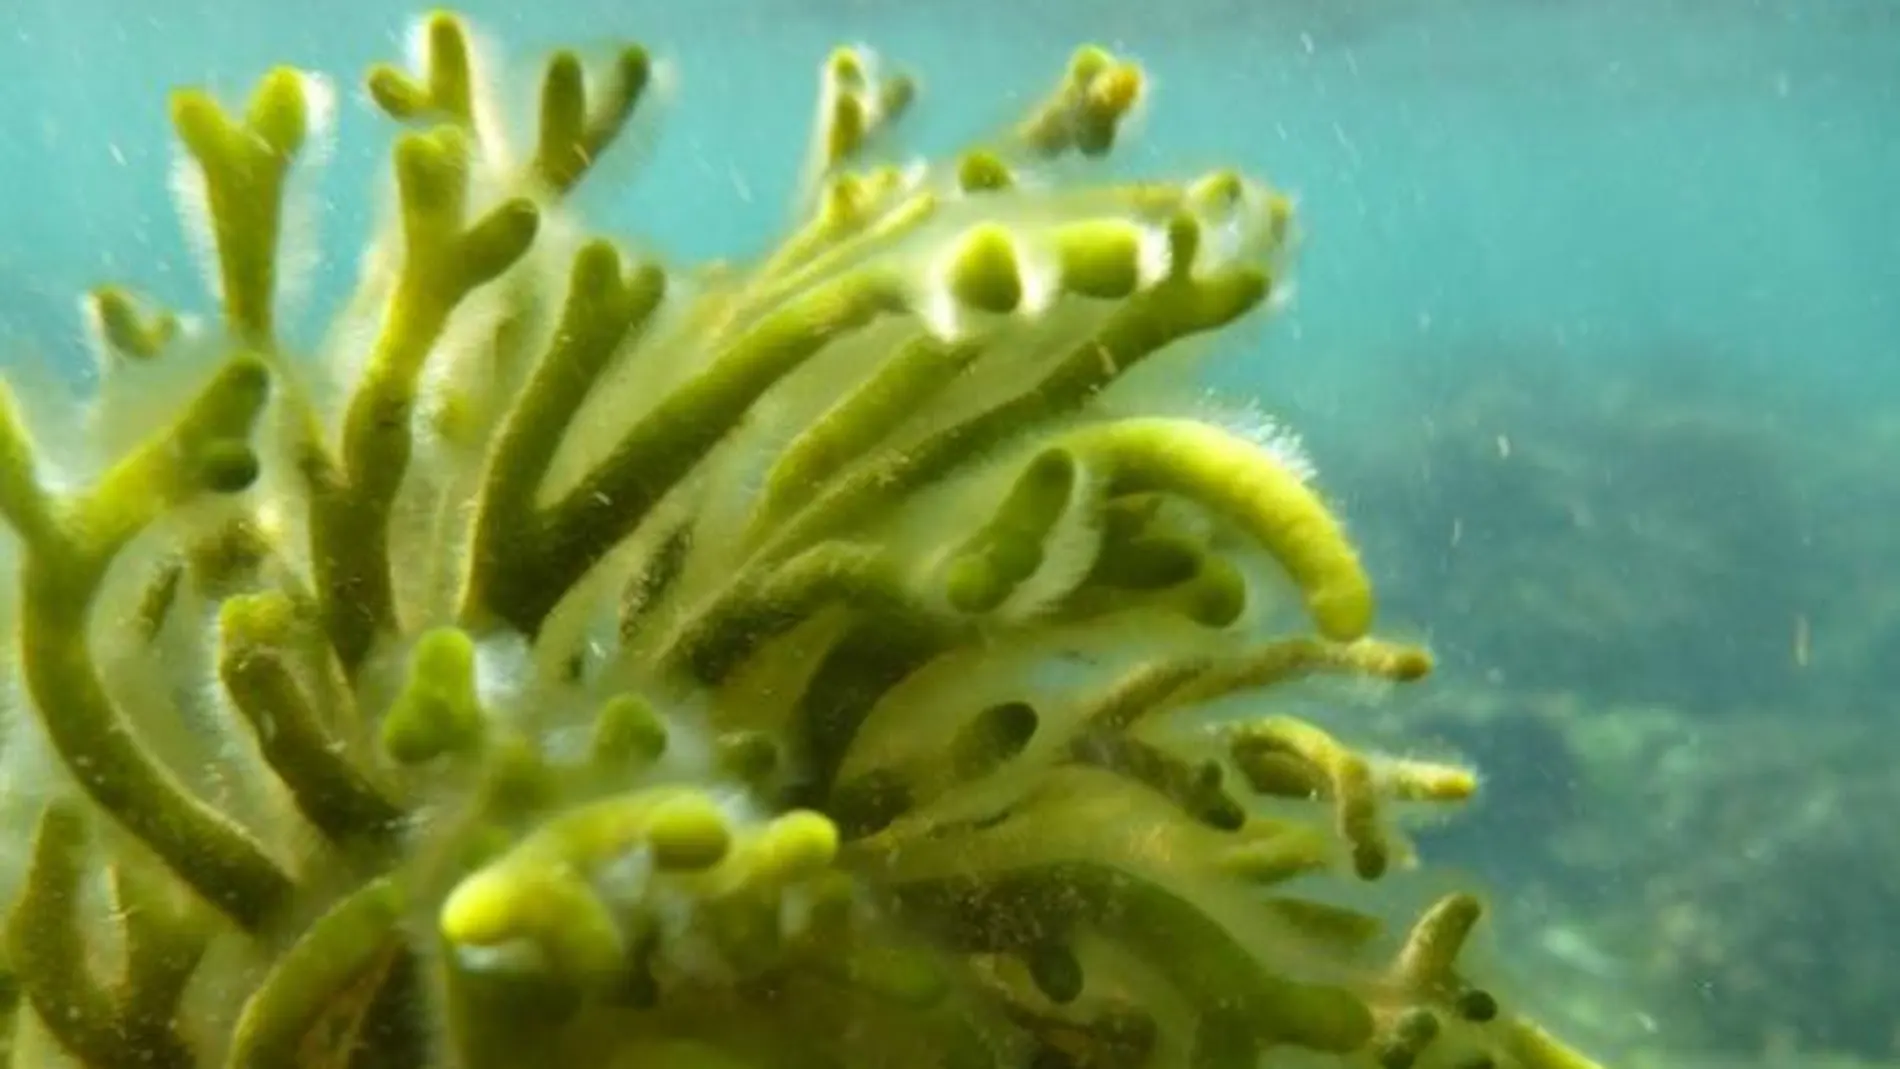 Descubren nuevas algas en el Mediterráneo, algunas tóxicas para los humanos